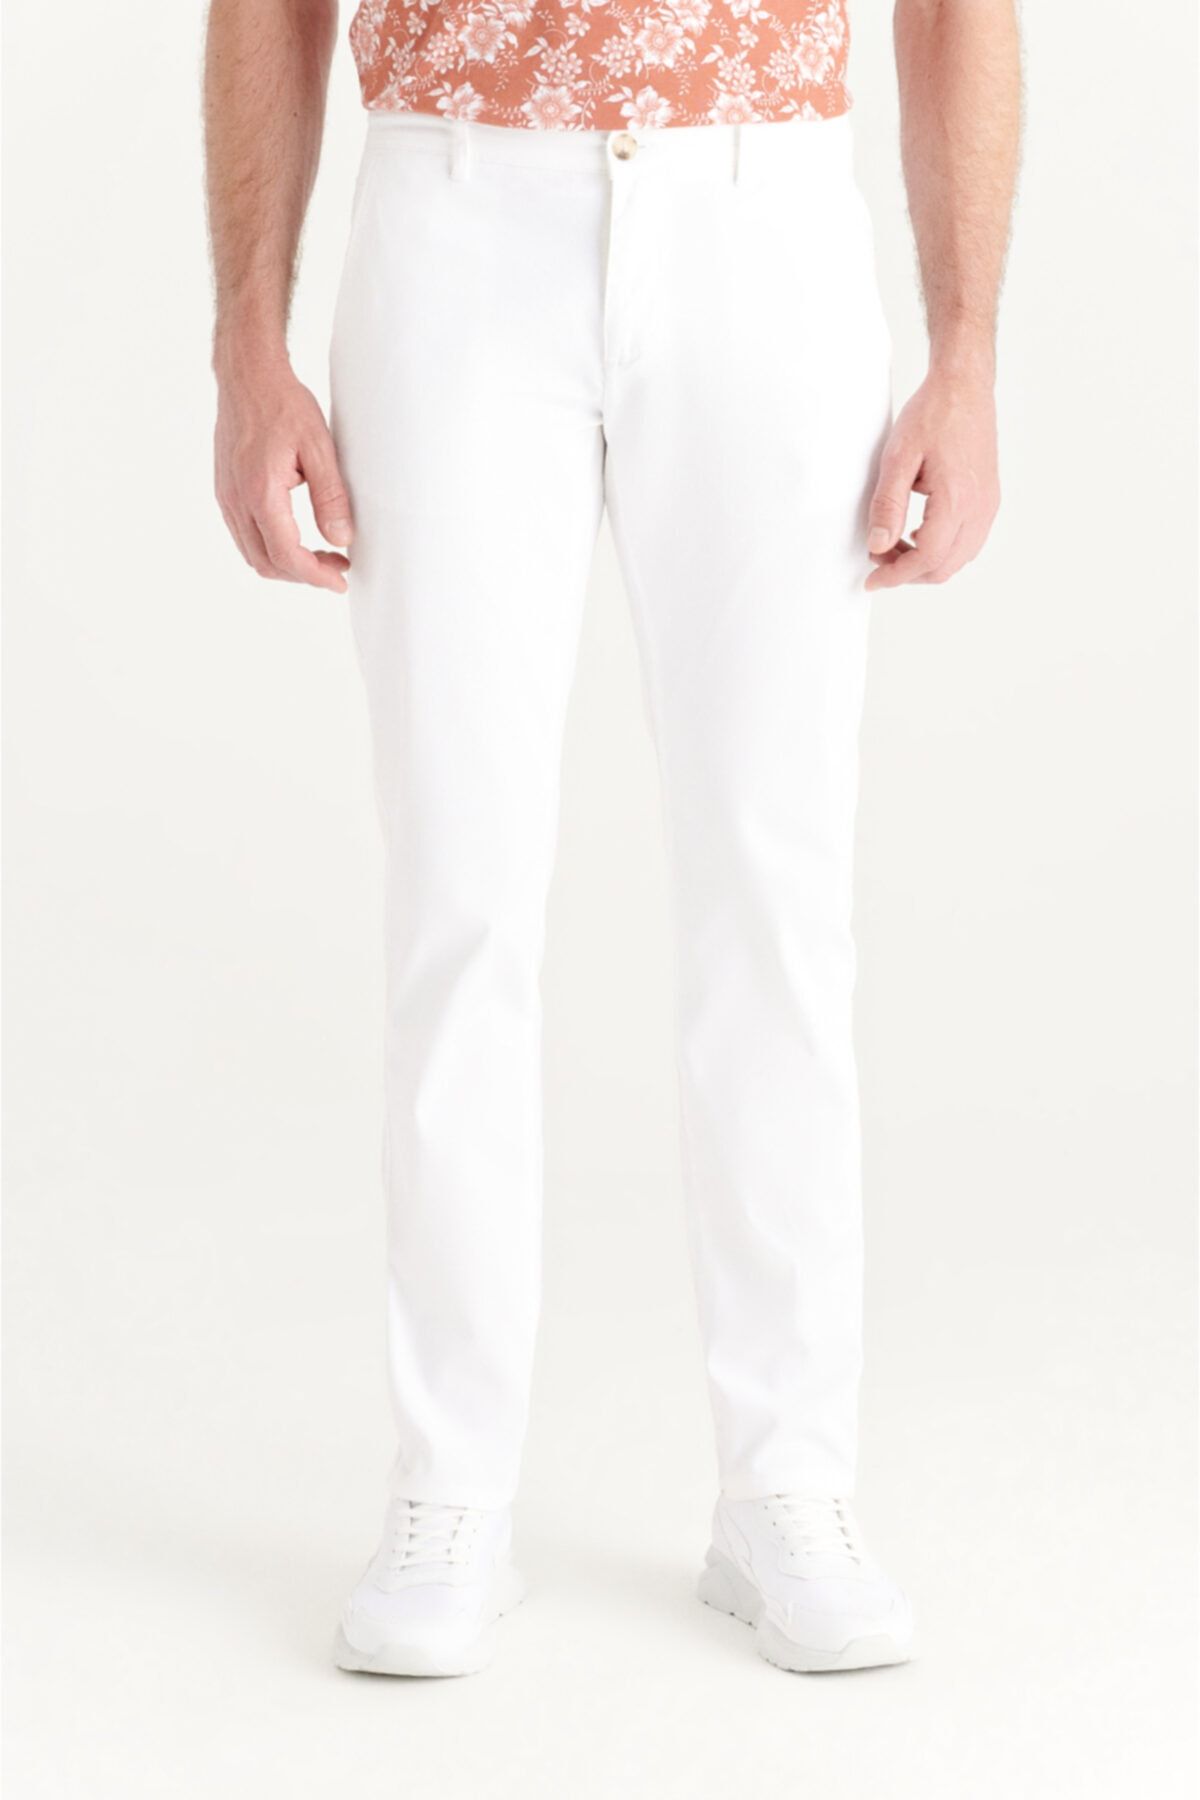 Avva Erkek Beyaz Yandan Cepli Armürlü Slim Fit Pantolon A11y3036